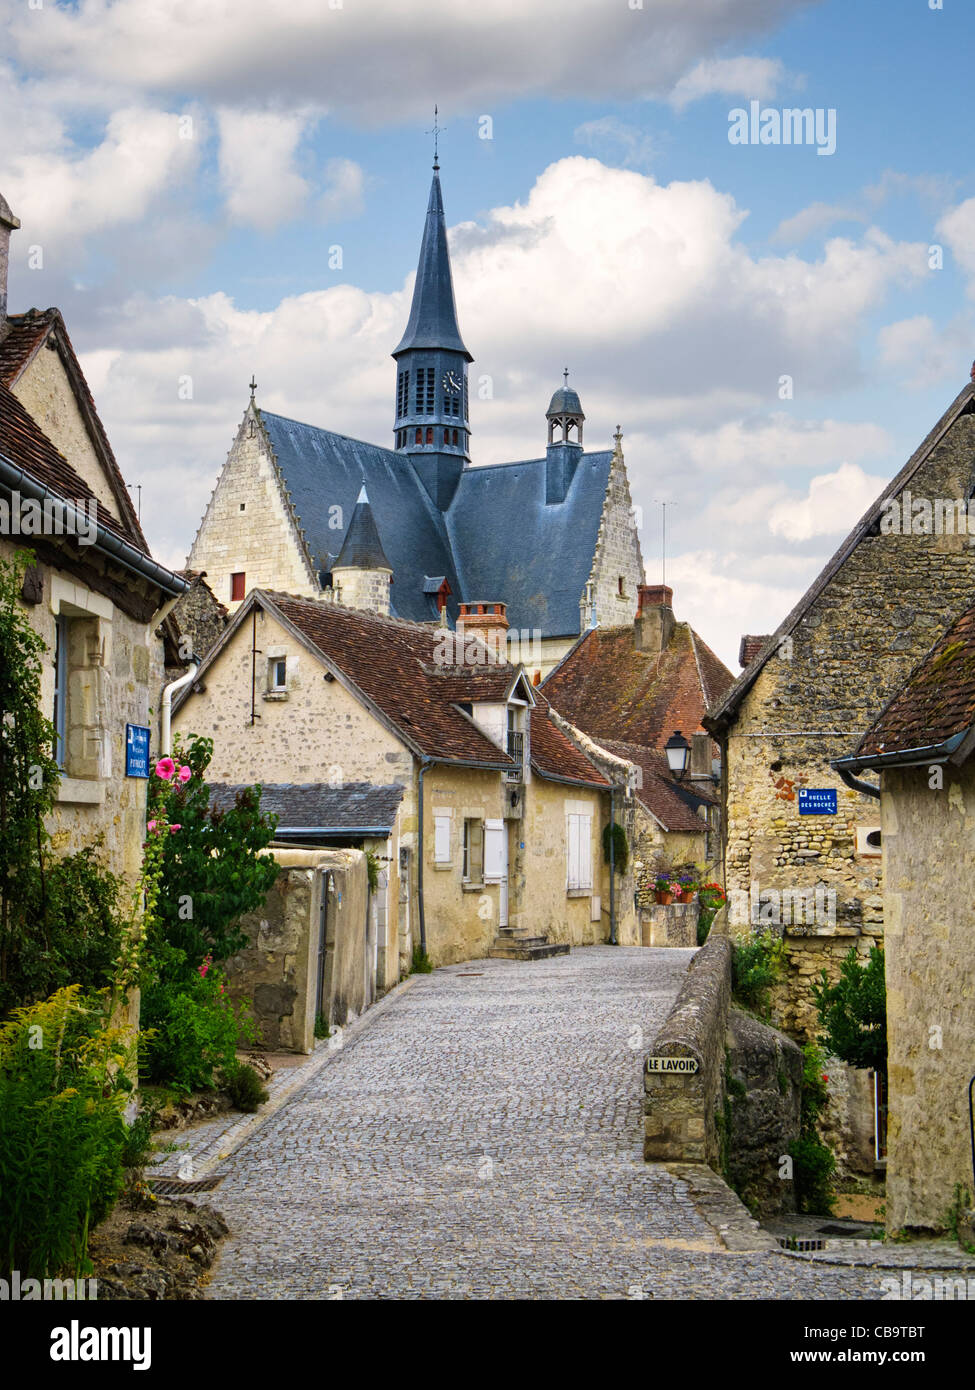 Village, France - vieille rue et maisons dans le joli village de Montresor dans la vallée de la Loire, France Banque D'Images